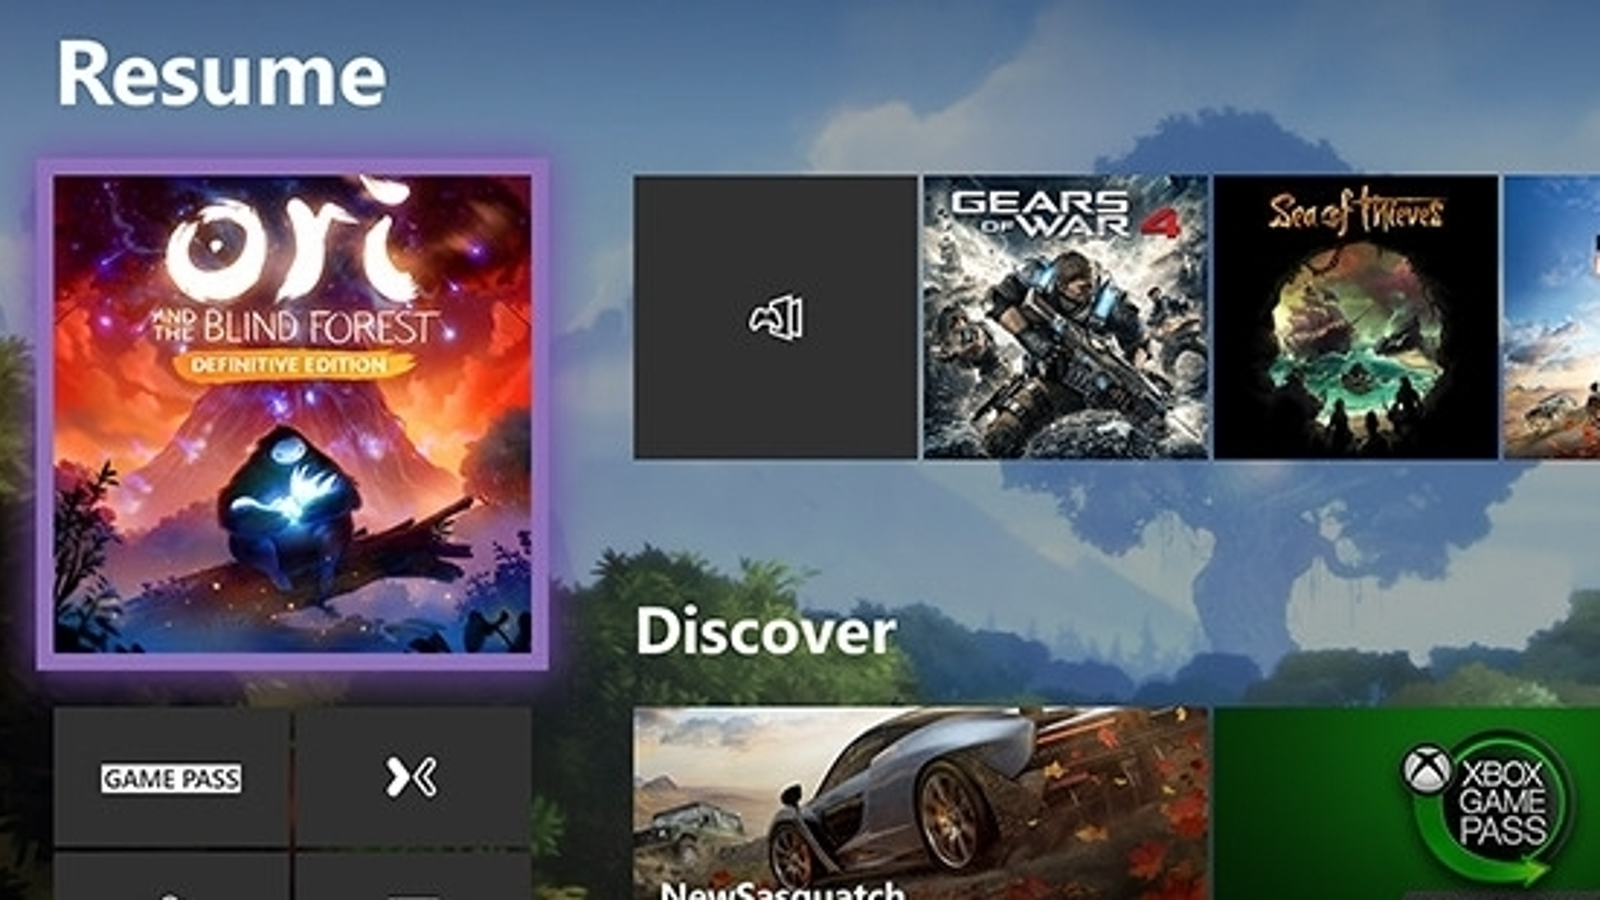 Amigo es bonito ladrar Microsoft prepara un nuevo diseño para la interfaz de Xbox One |  Eurogamer.es